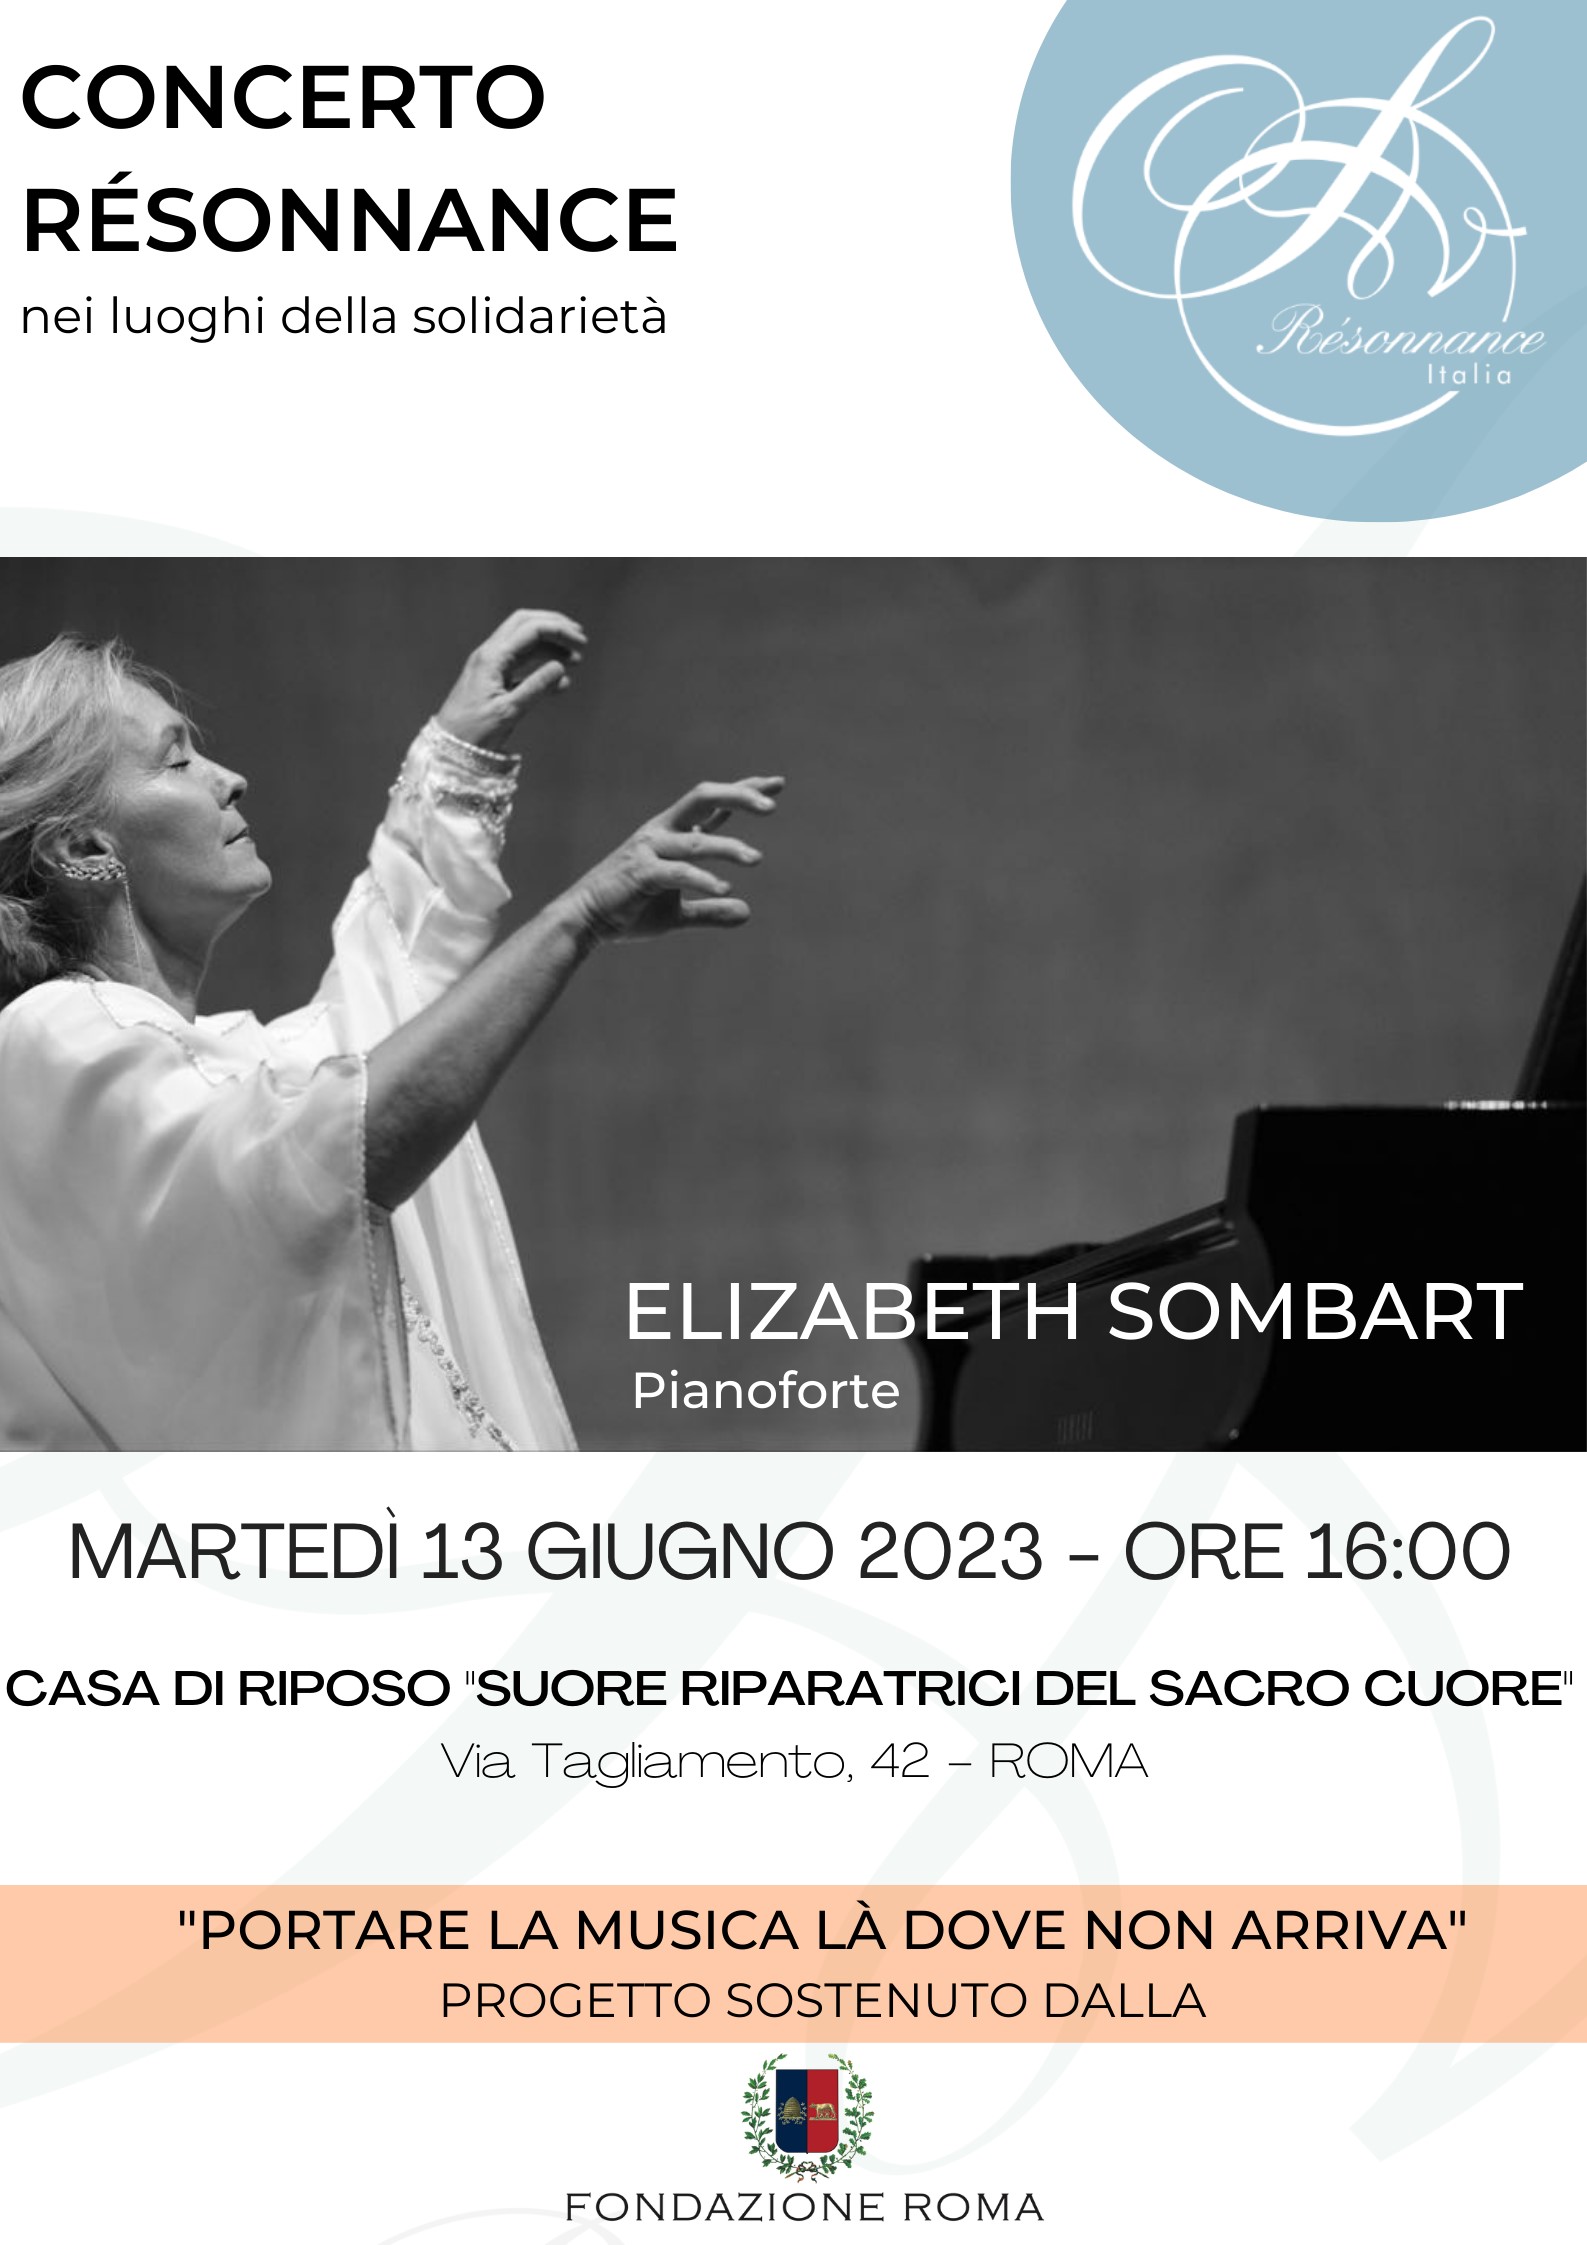 Concert avec Elizabeth Sombart